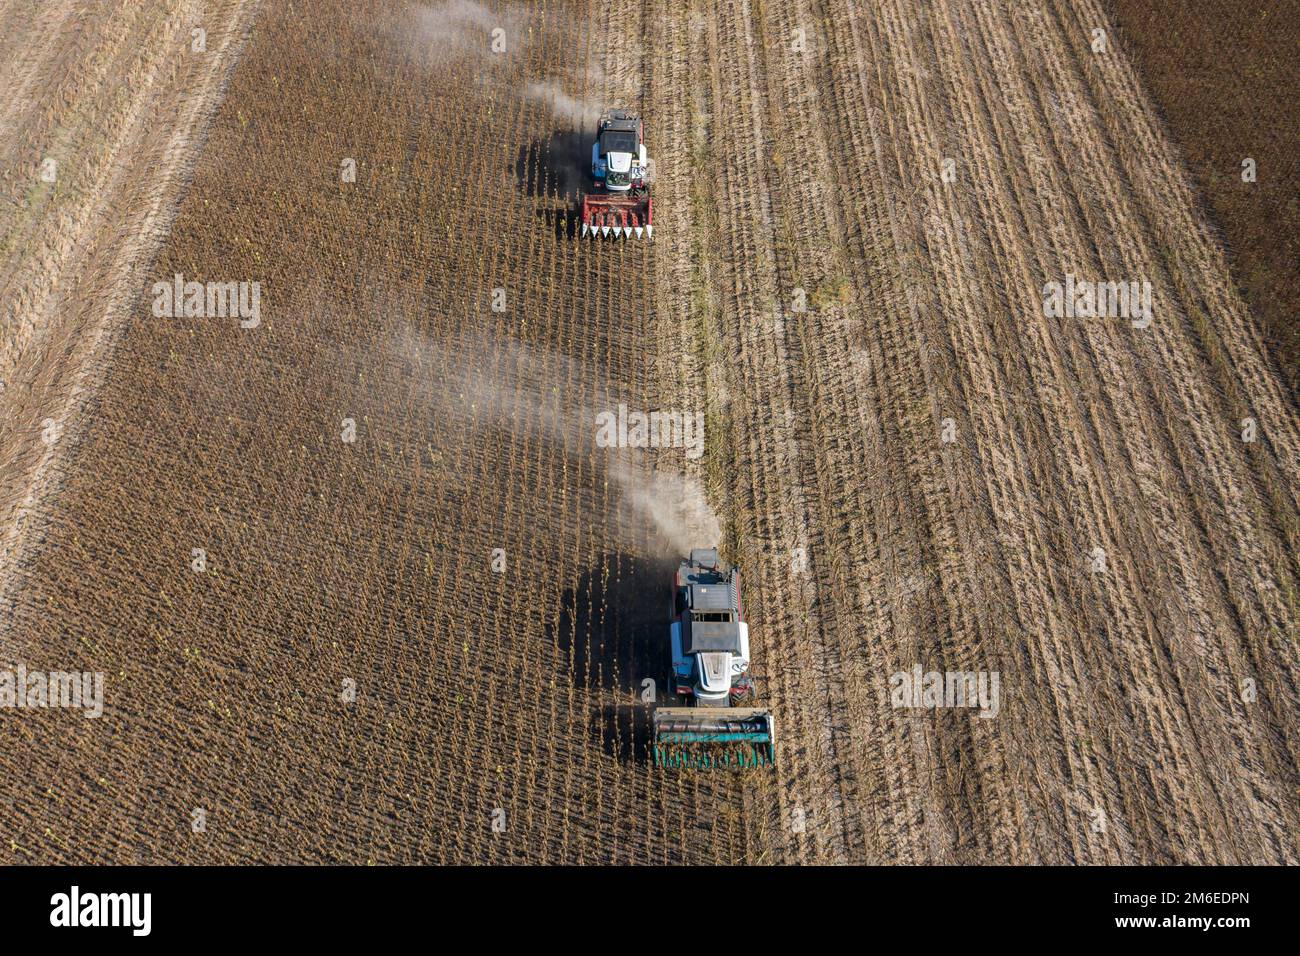 Récolte de graines de tournesol, vue aérienne Banque D'Images